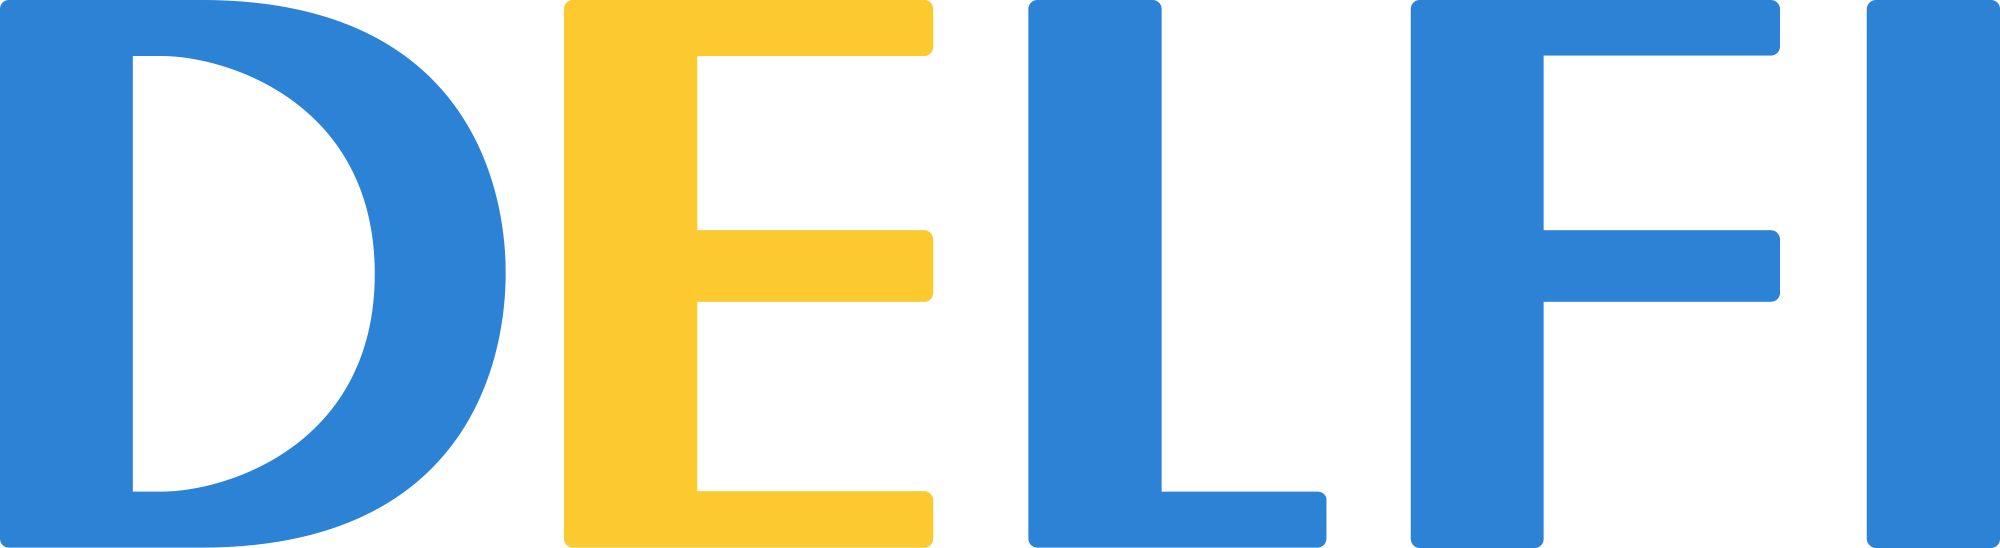 D9JSA6_delfi-logo_20151